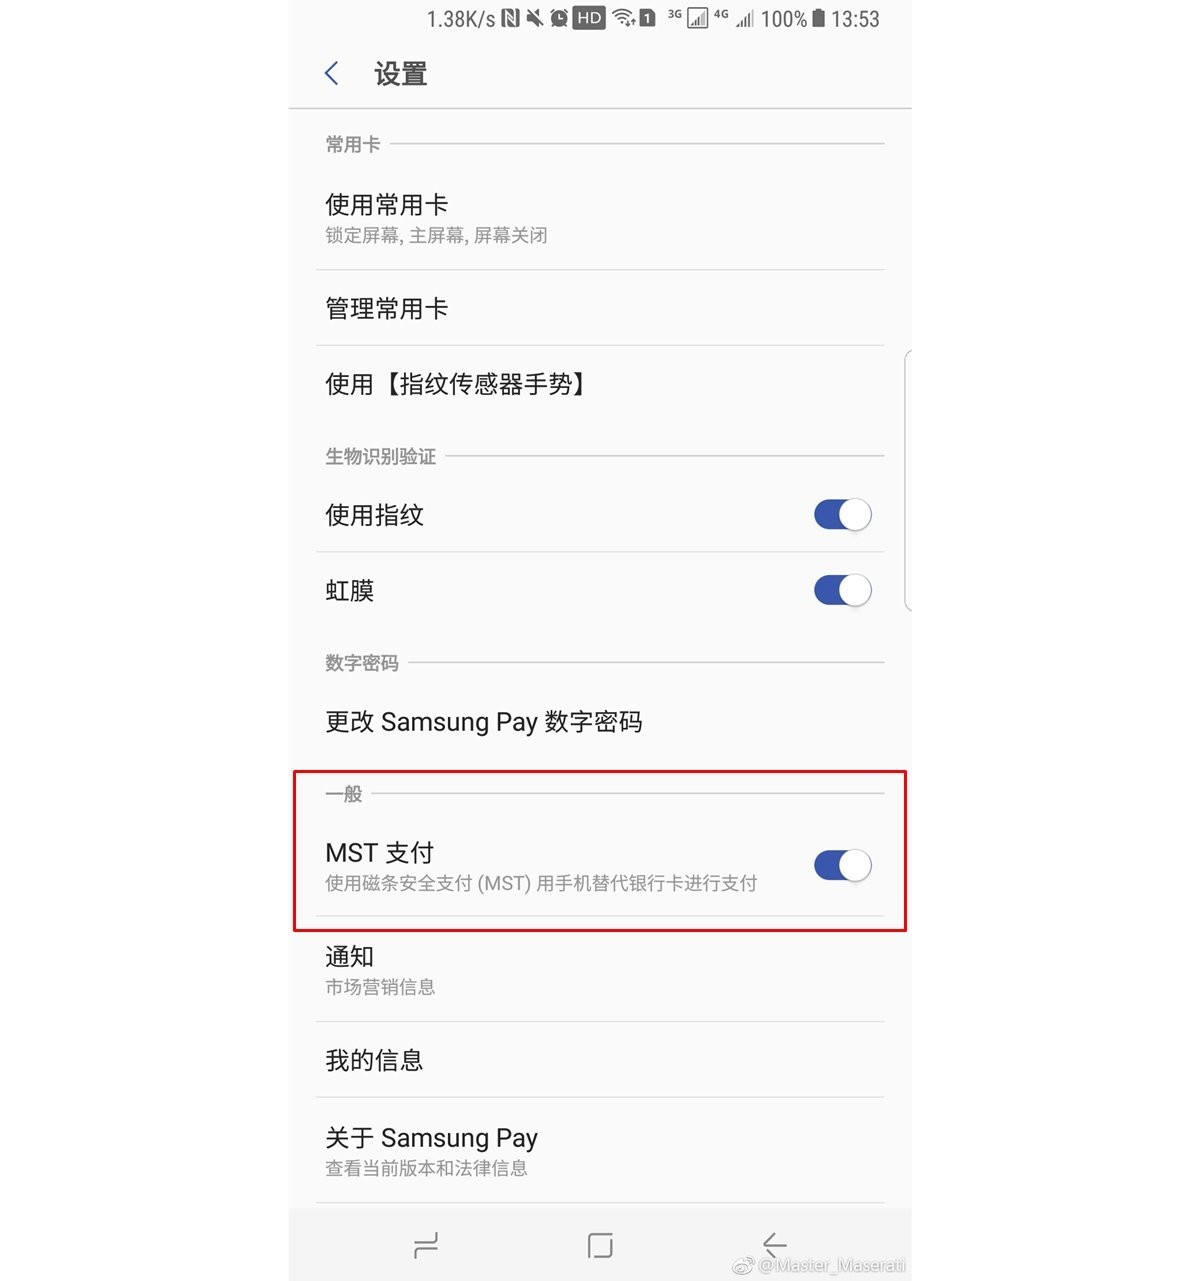 La última actualización de Samsung Pay trae la opción de deshabilitar MST